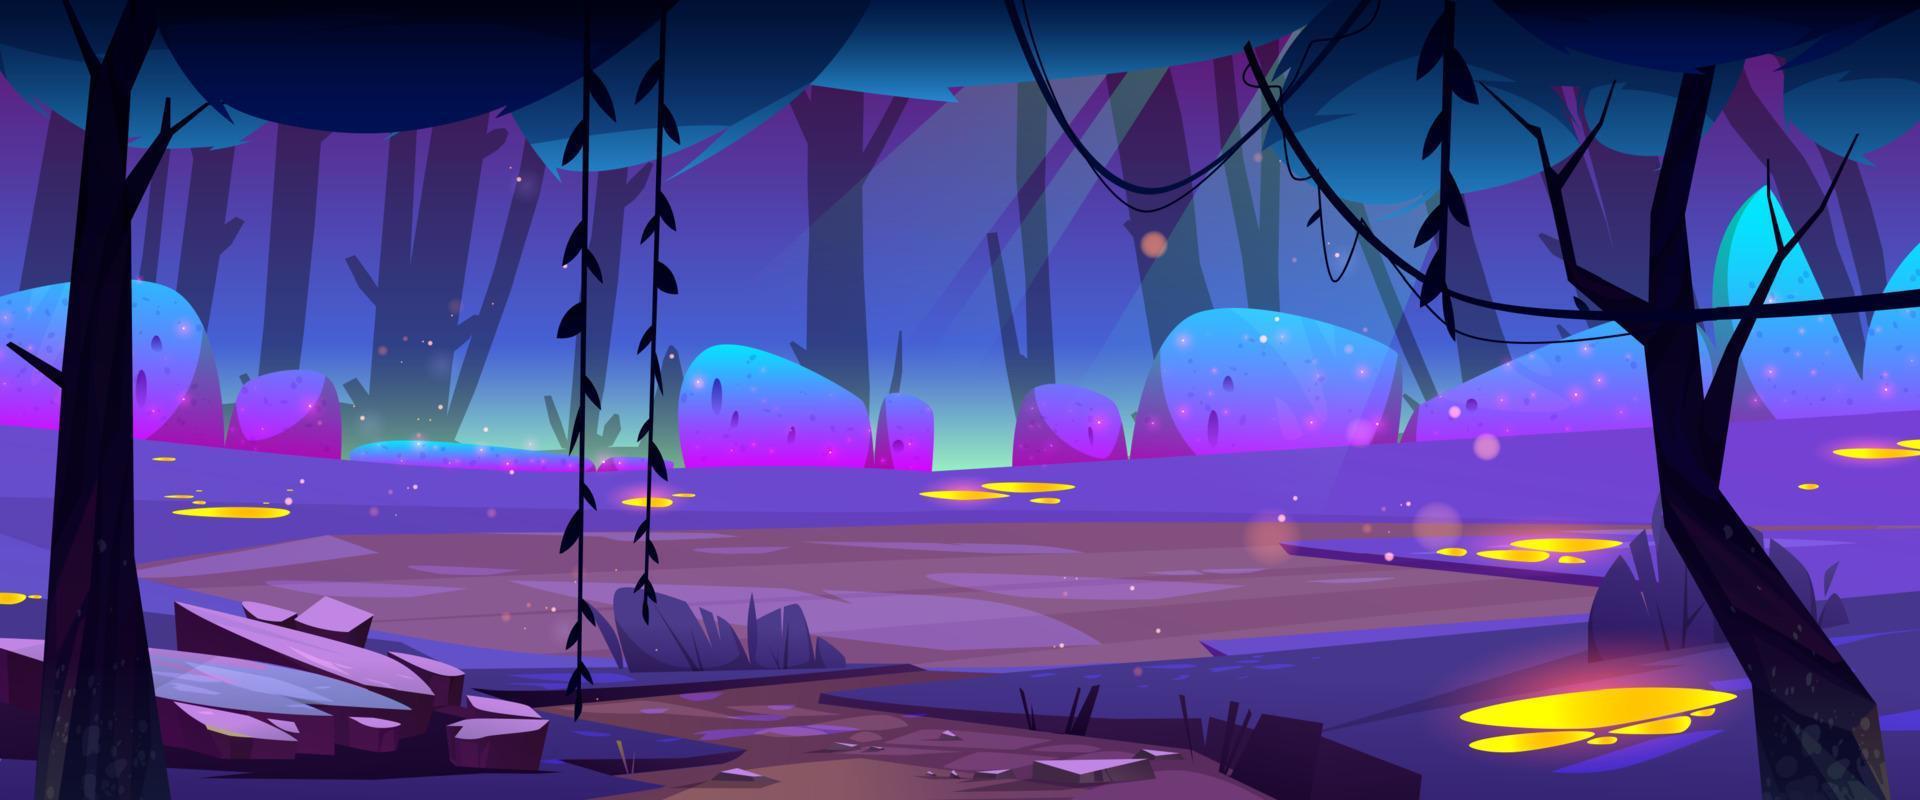 natt skog landskap, tecknad serie mystisk fantasi vektor